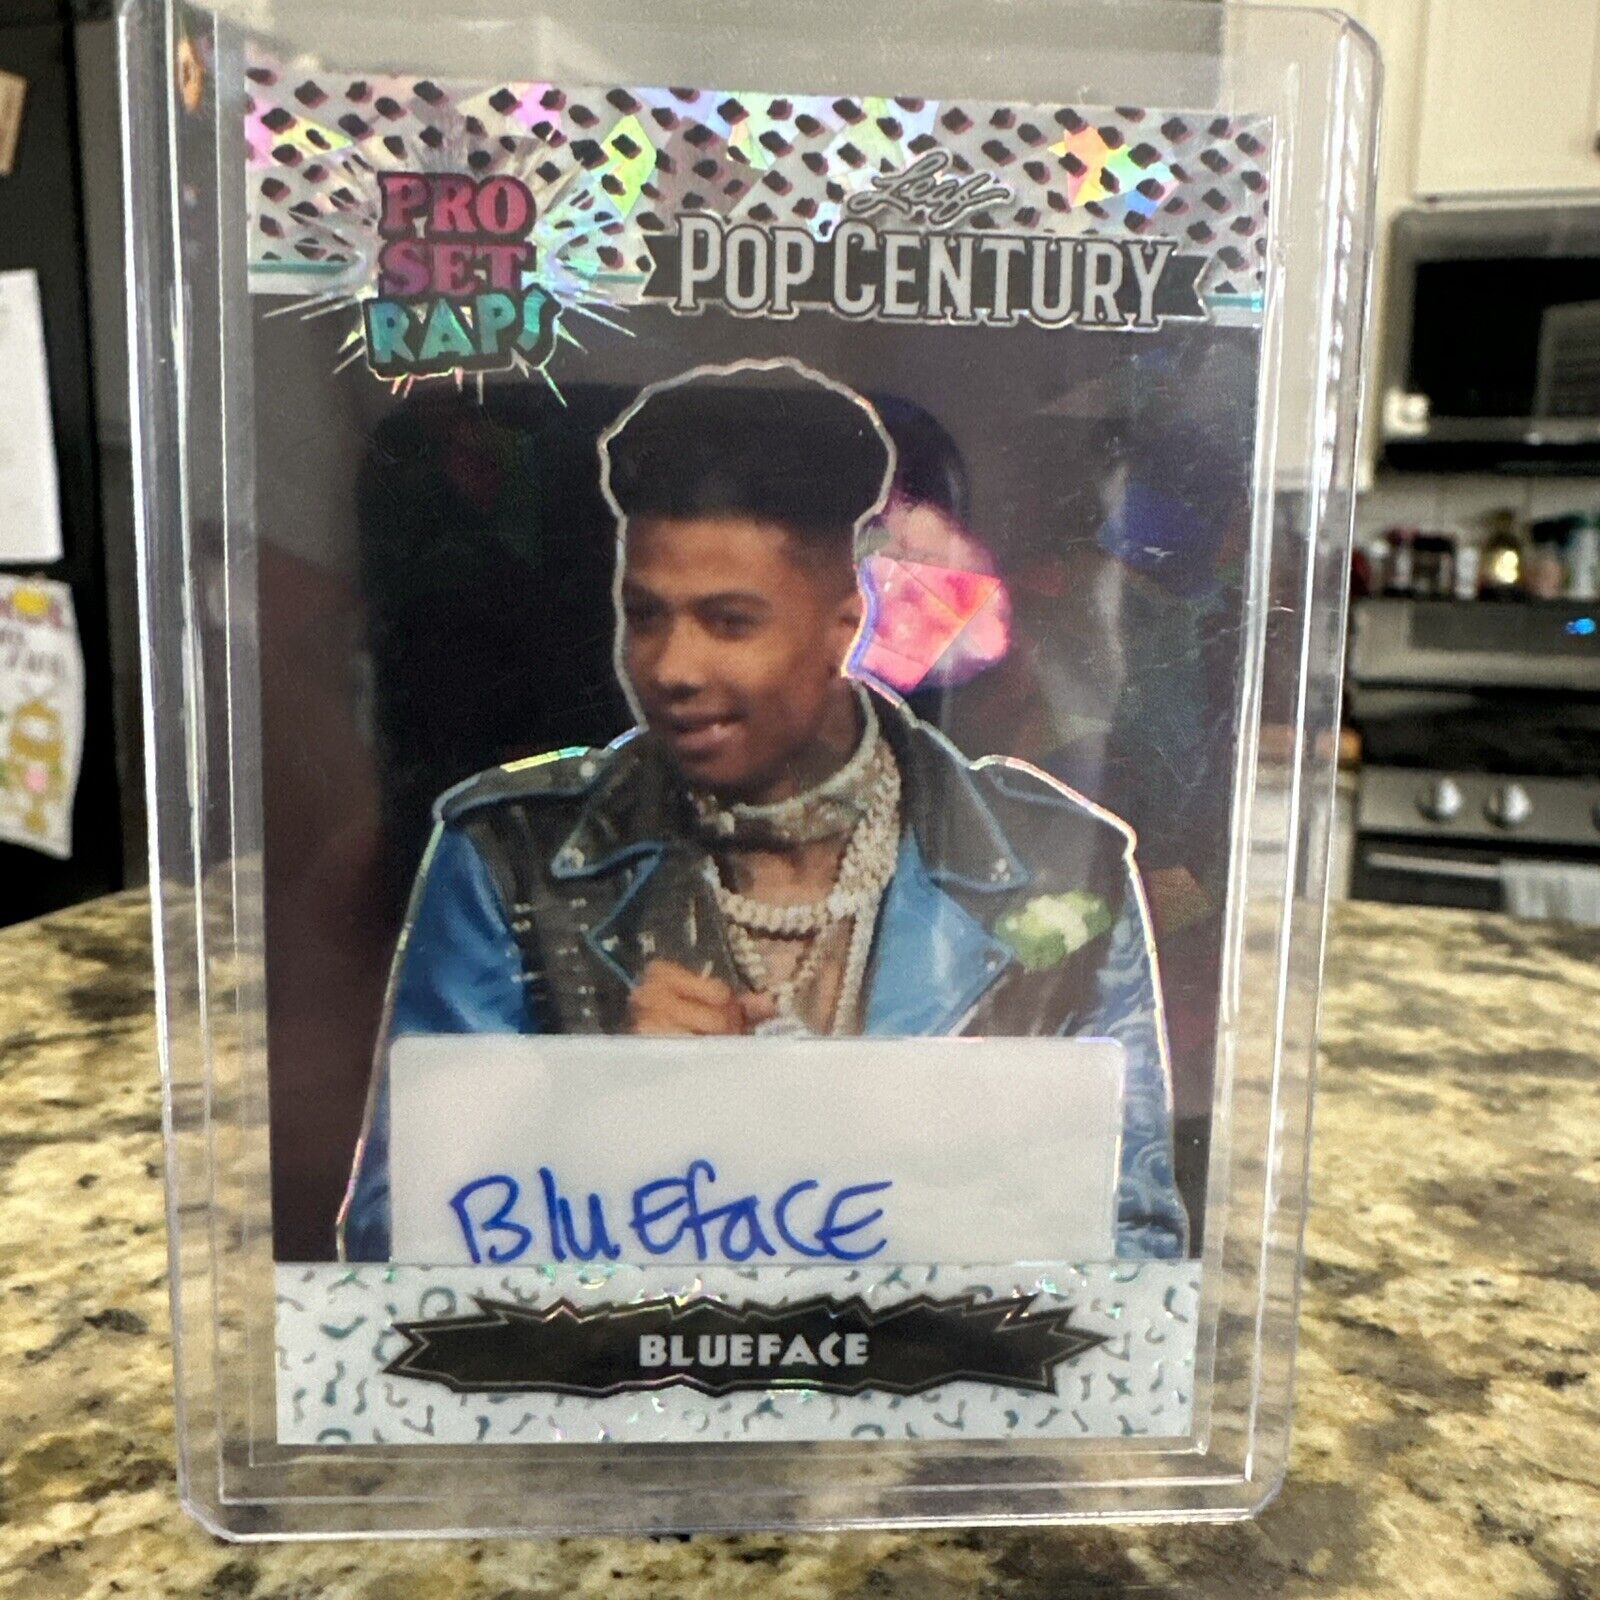 2023 Leaf Pop Century Blueface Pro Set Raps # 11/25 White Auto Autograph Card